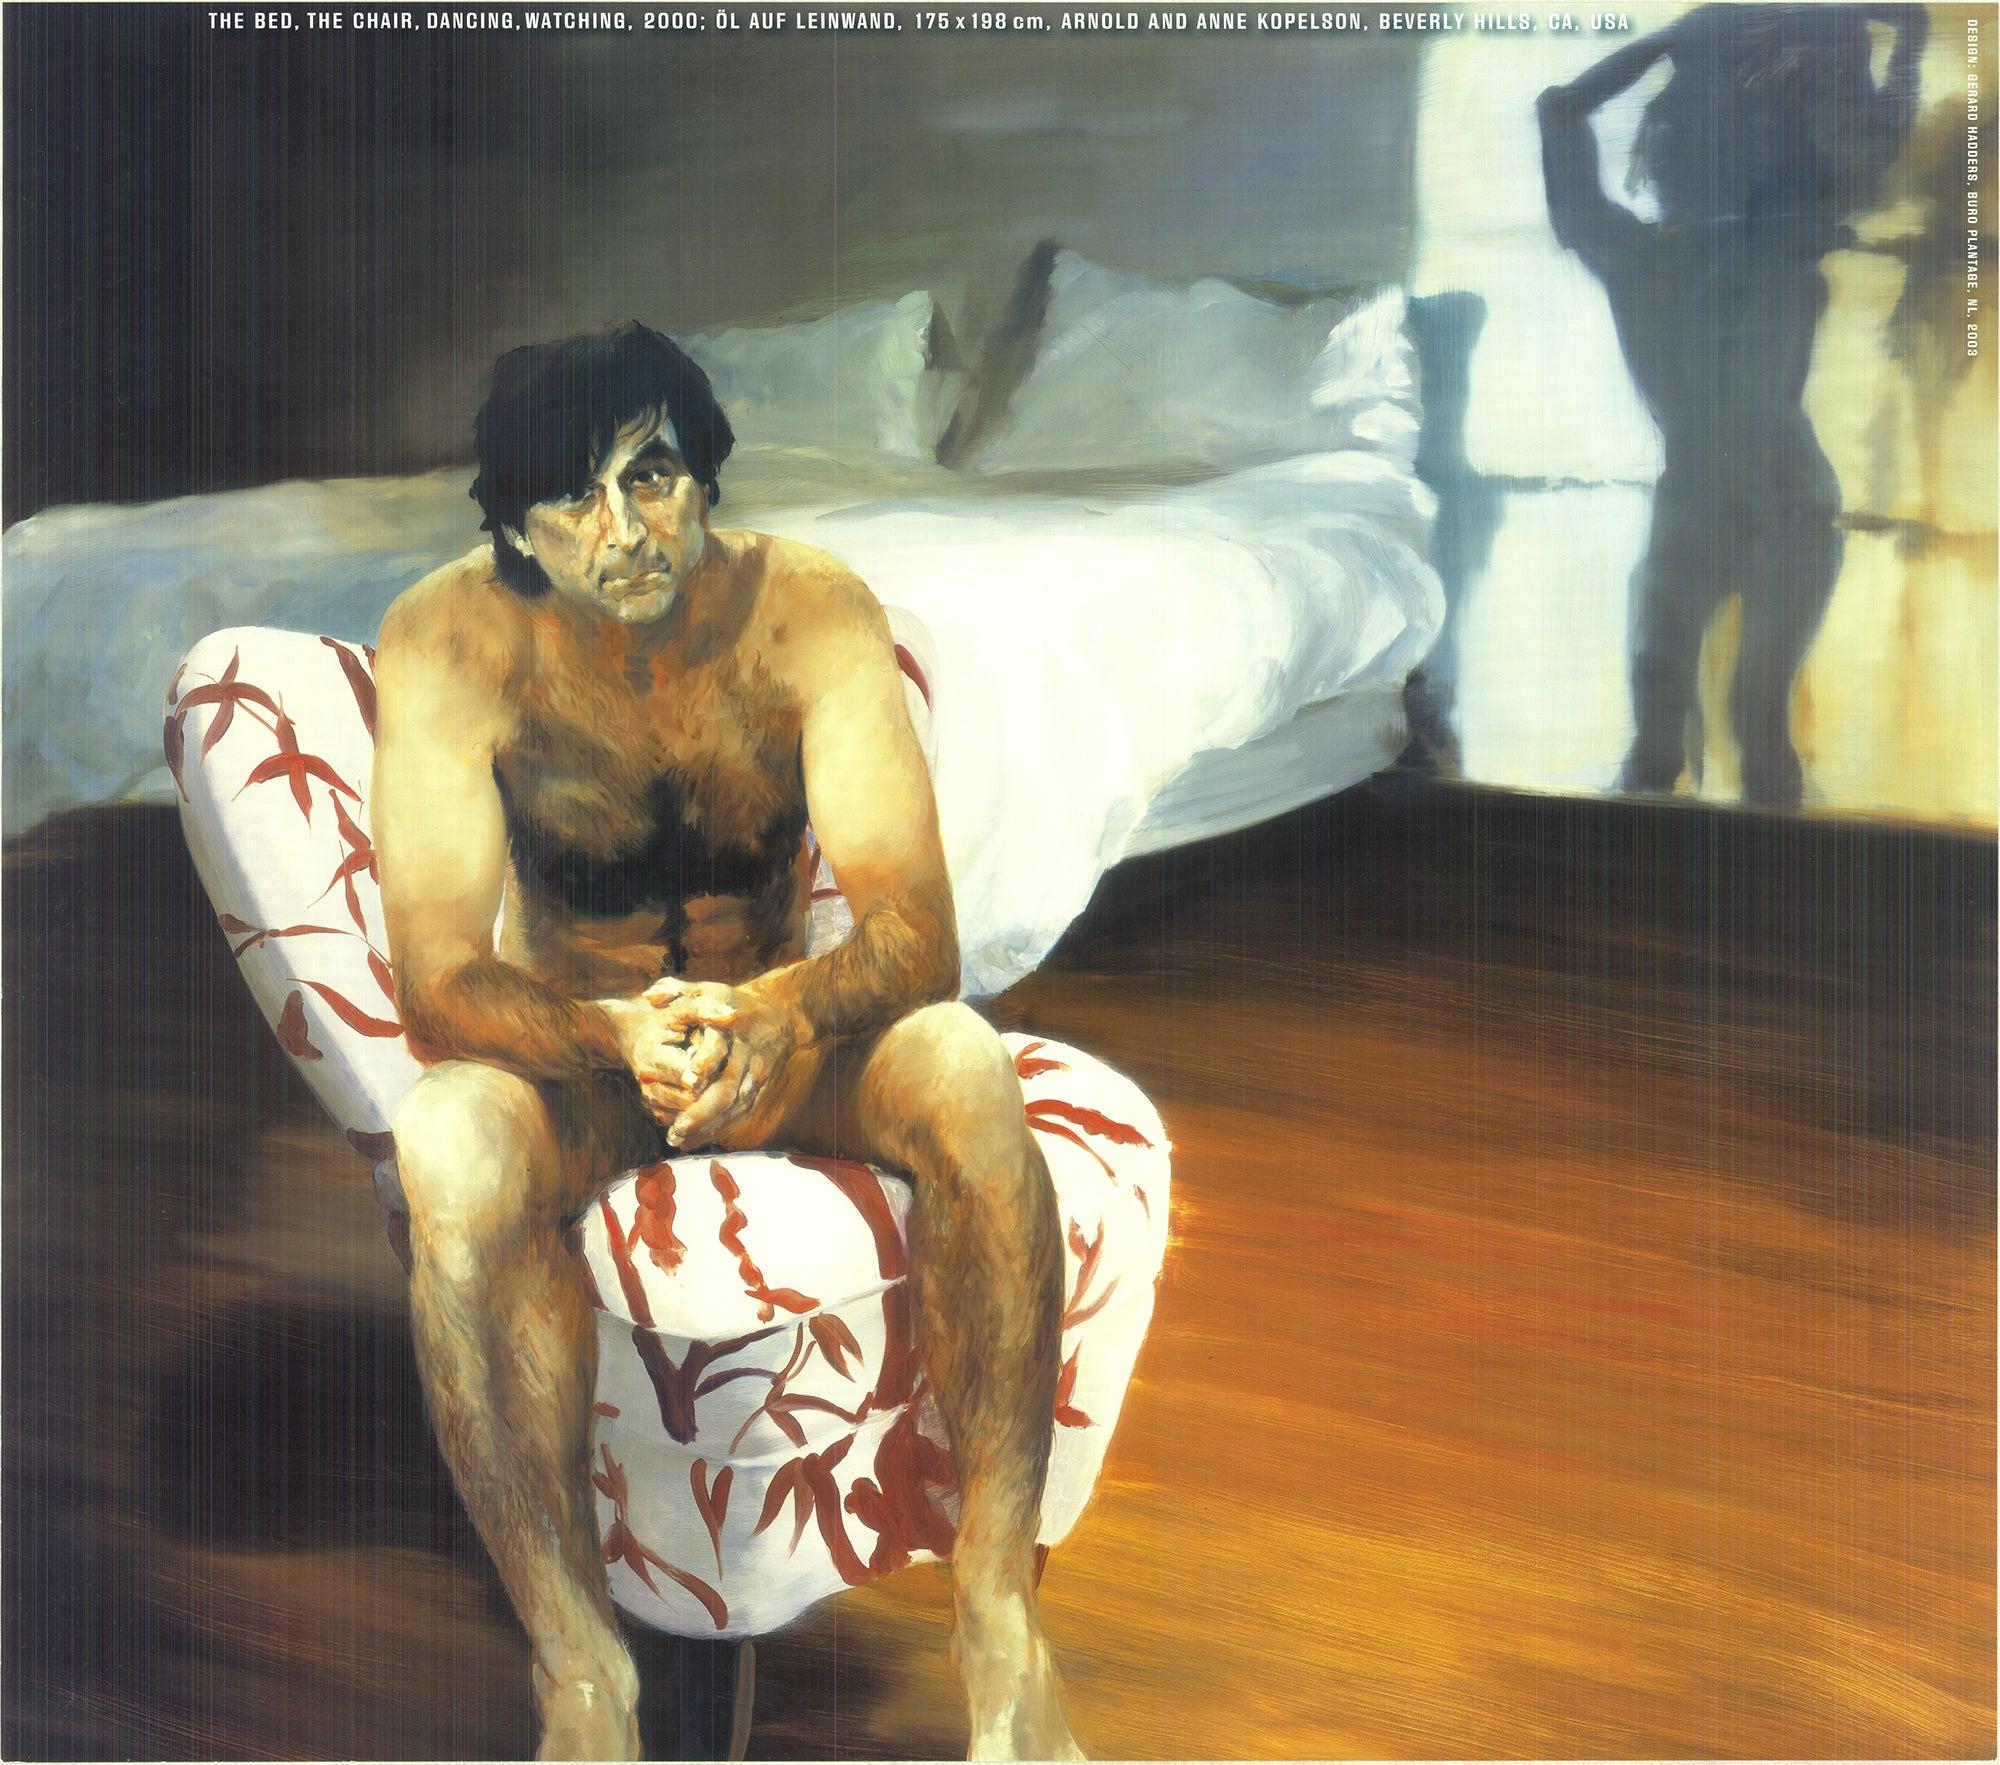 Eric Fischl « Le lit, la chaise, la danseuse », 1984